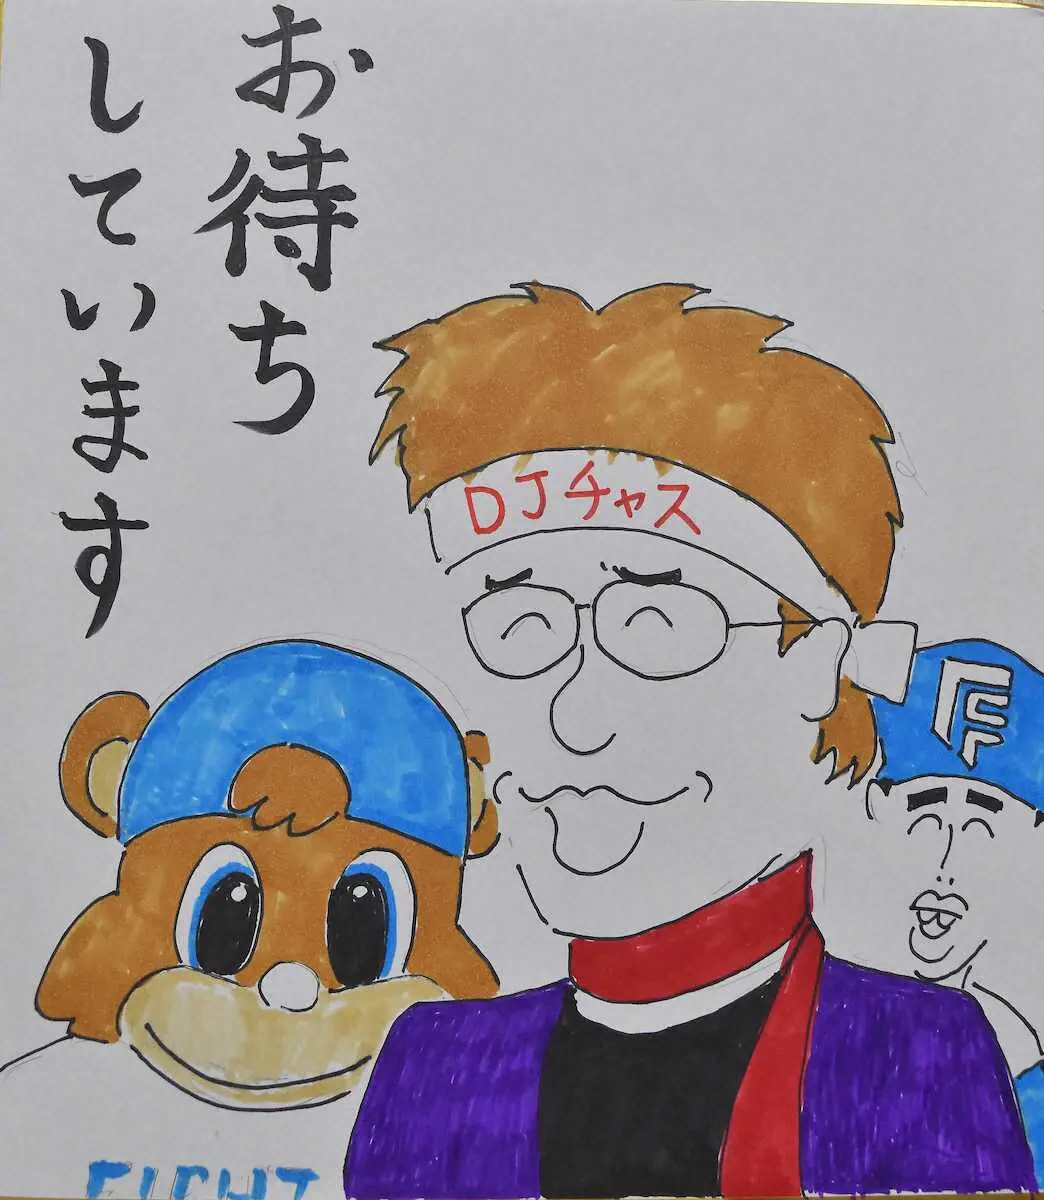 木田画伯が描いたDJチャス。、ファームマスコット・カビー